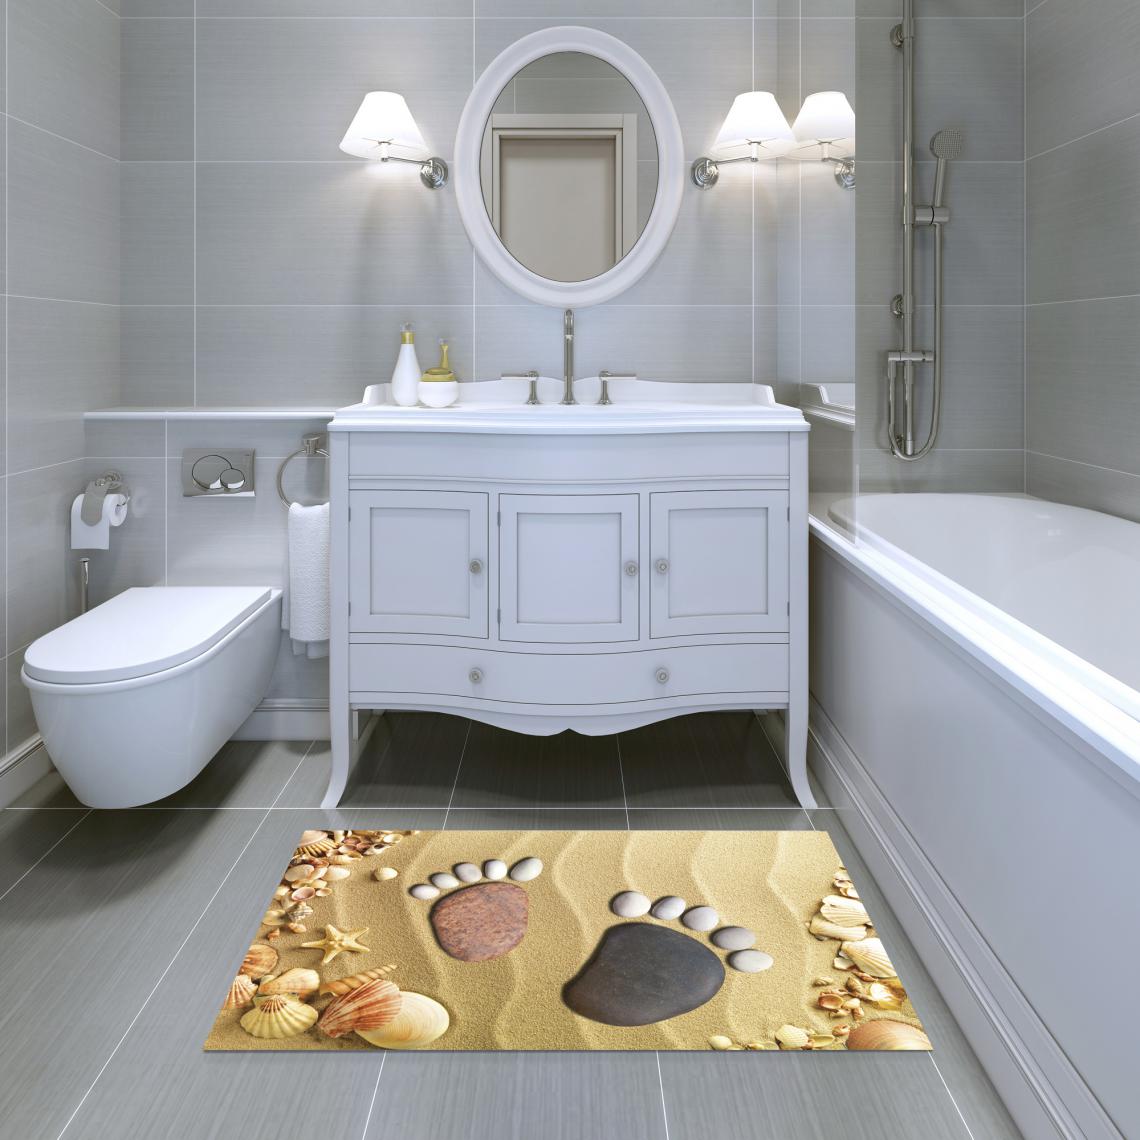 Alter - Tapis de salle de bain, 100% Made in Italy, Tapis antitache avec impression numérique, Tapis antidérapant et lavable, Modèle Alana, cm 62x52 - Tapis